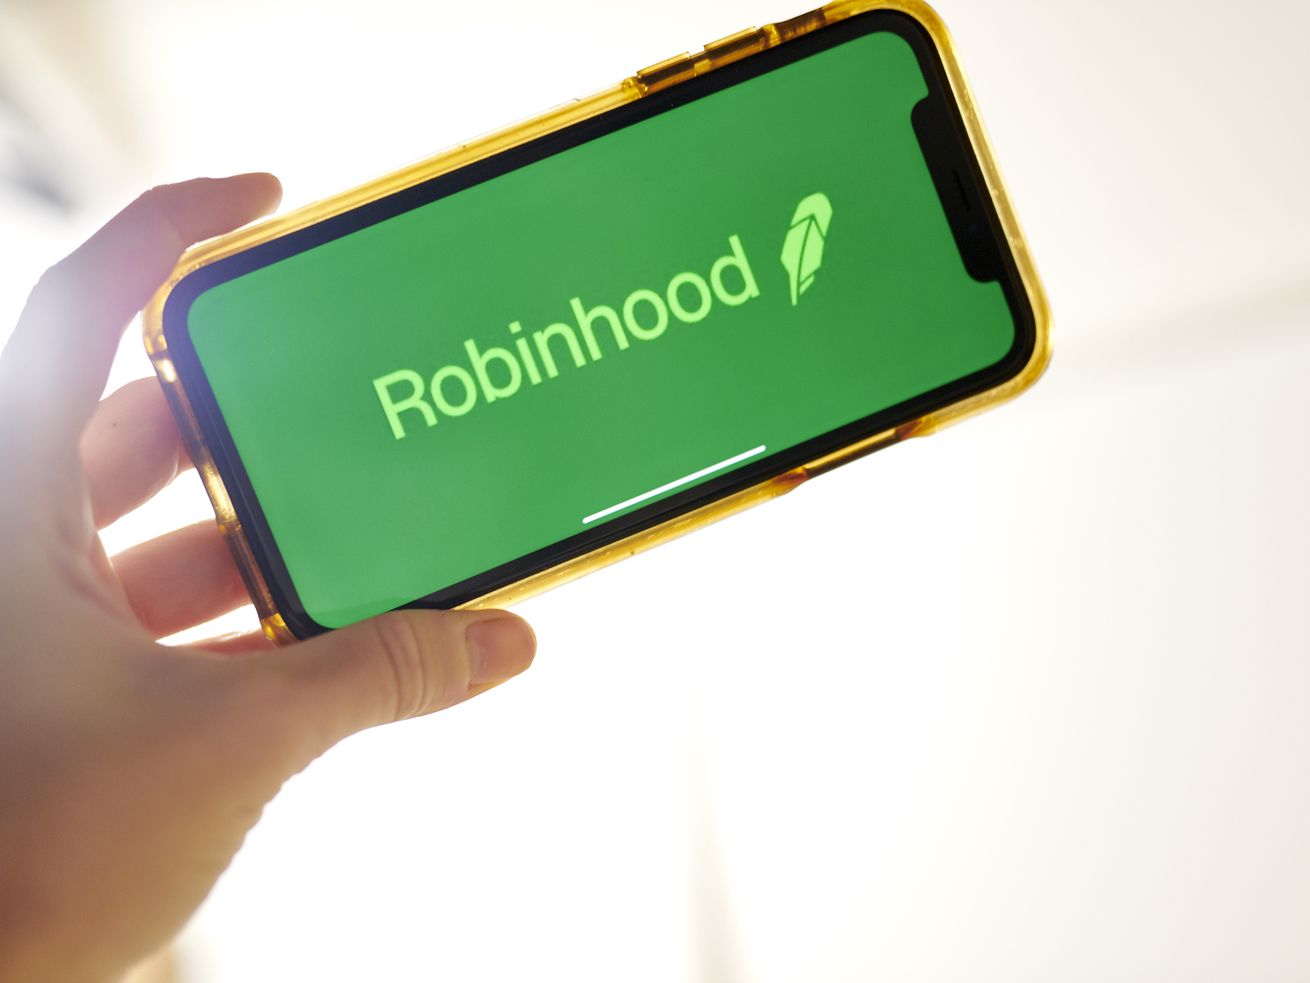 Robinhood app on a phone.